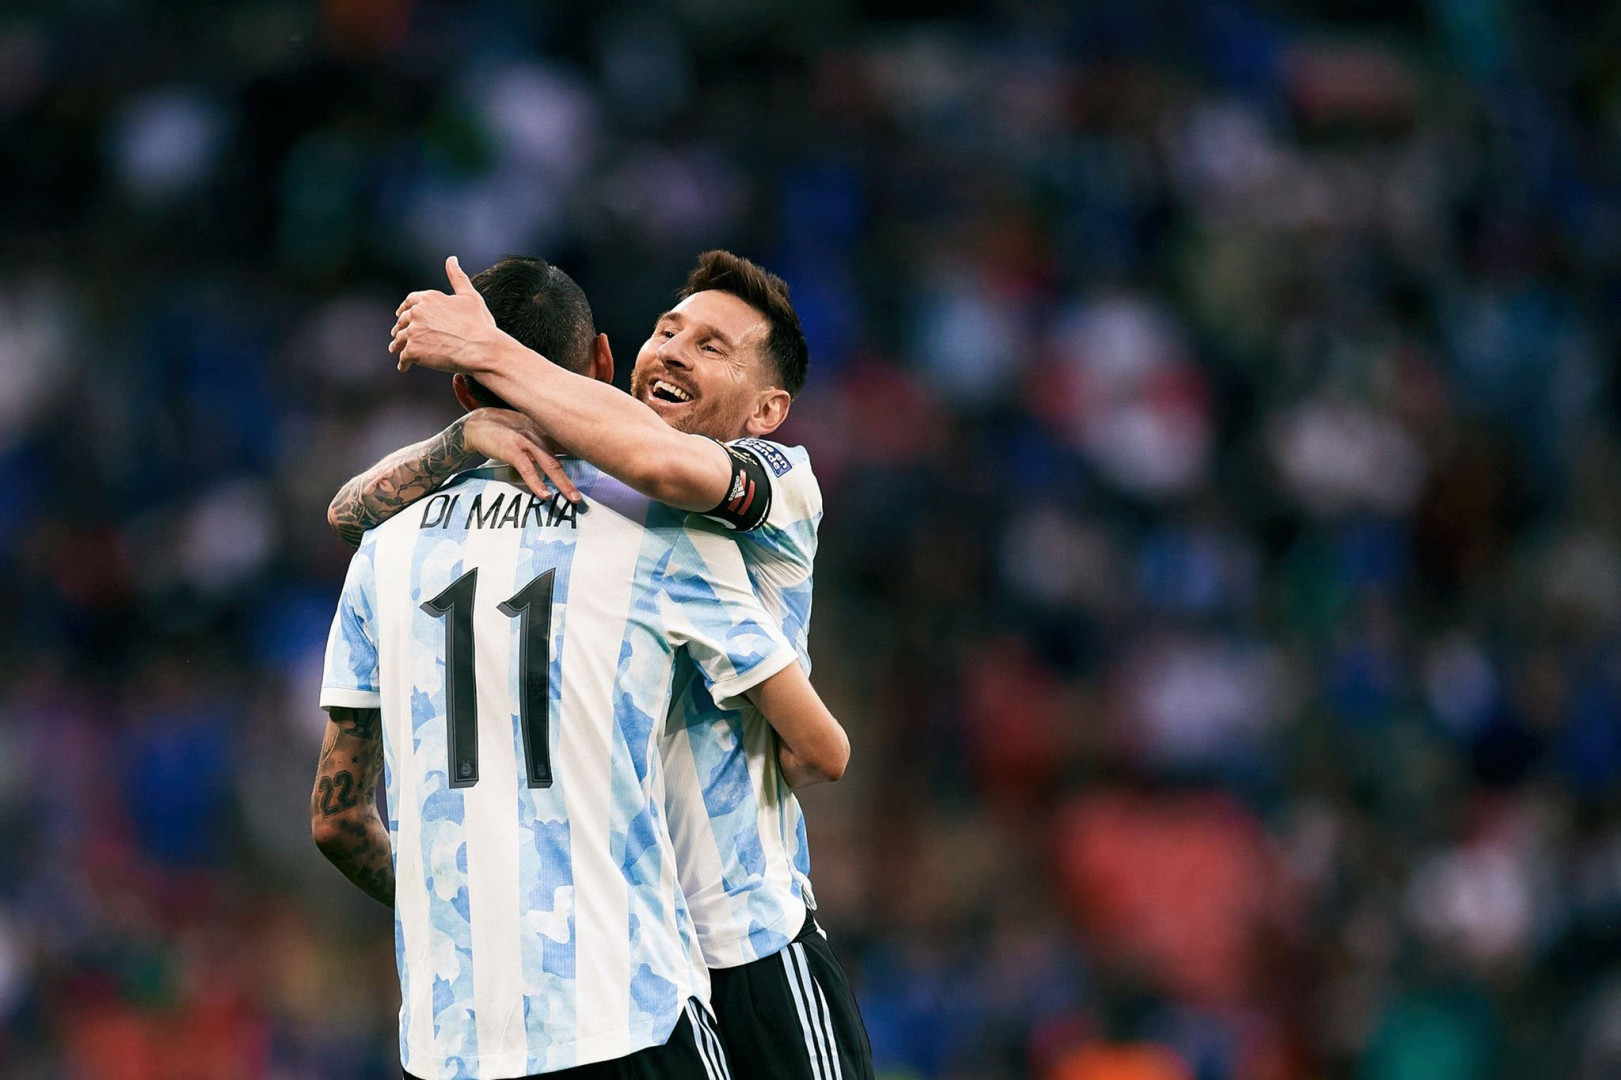 الأرجنتين تدك إيطاليا بثلاثية وتحقق كأس أوروبا أمريكا الجنوبية  